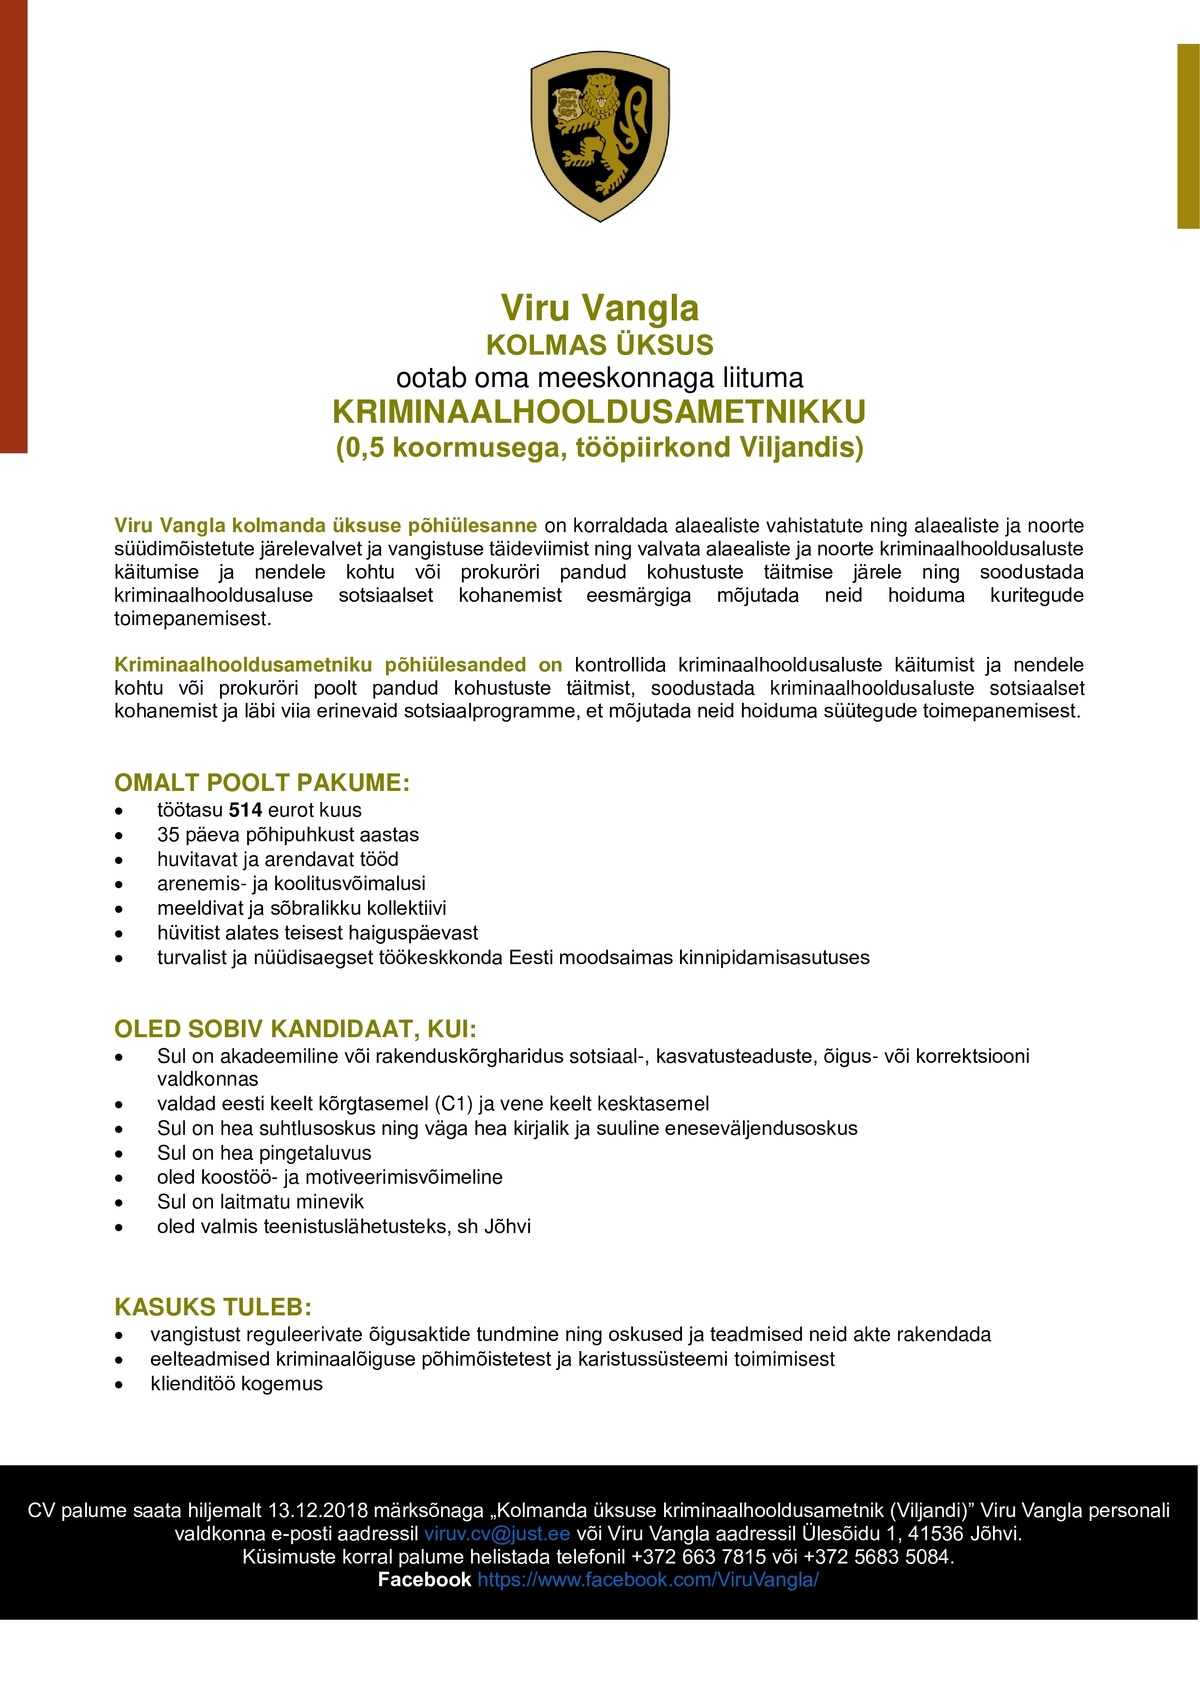 Viru Vangla Kriminaalhooldusametnik (0,5 koormusega, tööpiirkond Viljandi)